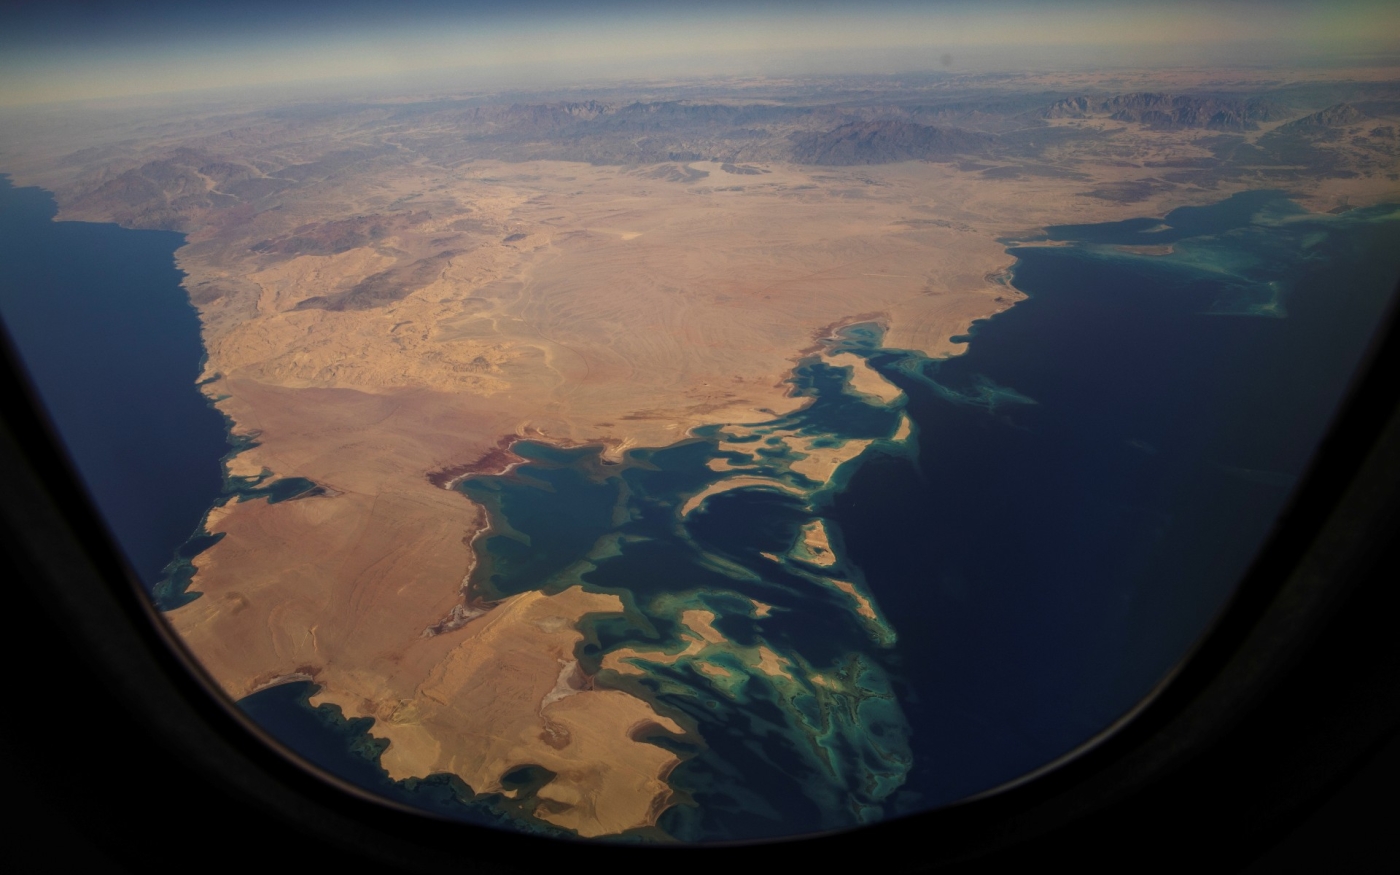 Le futur site de Neom avant les développements dans la province de Tabuk, au Nord-Ouest de l’Arabie saoudite (Reuters)